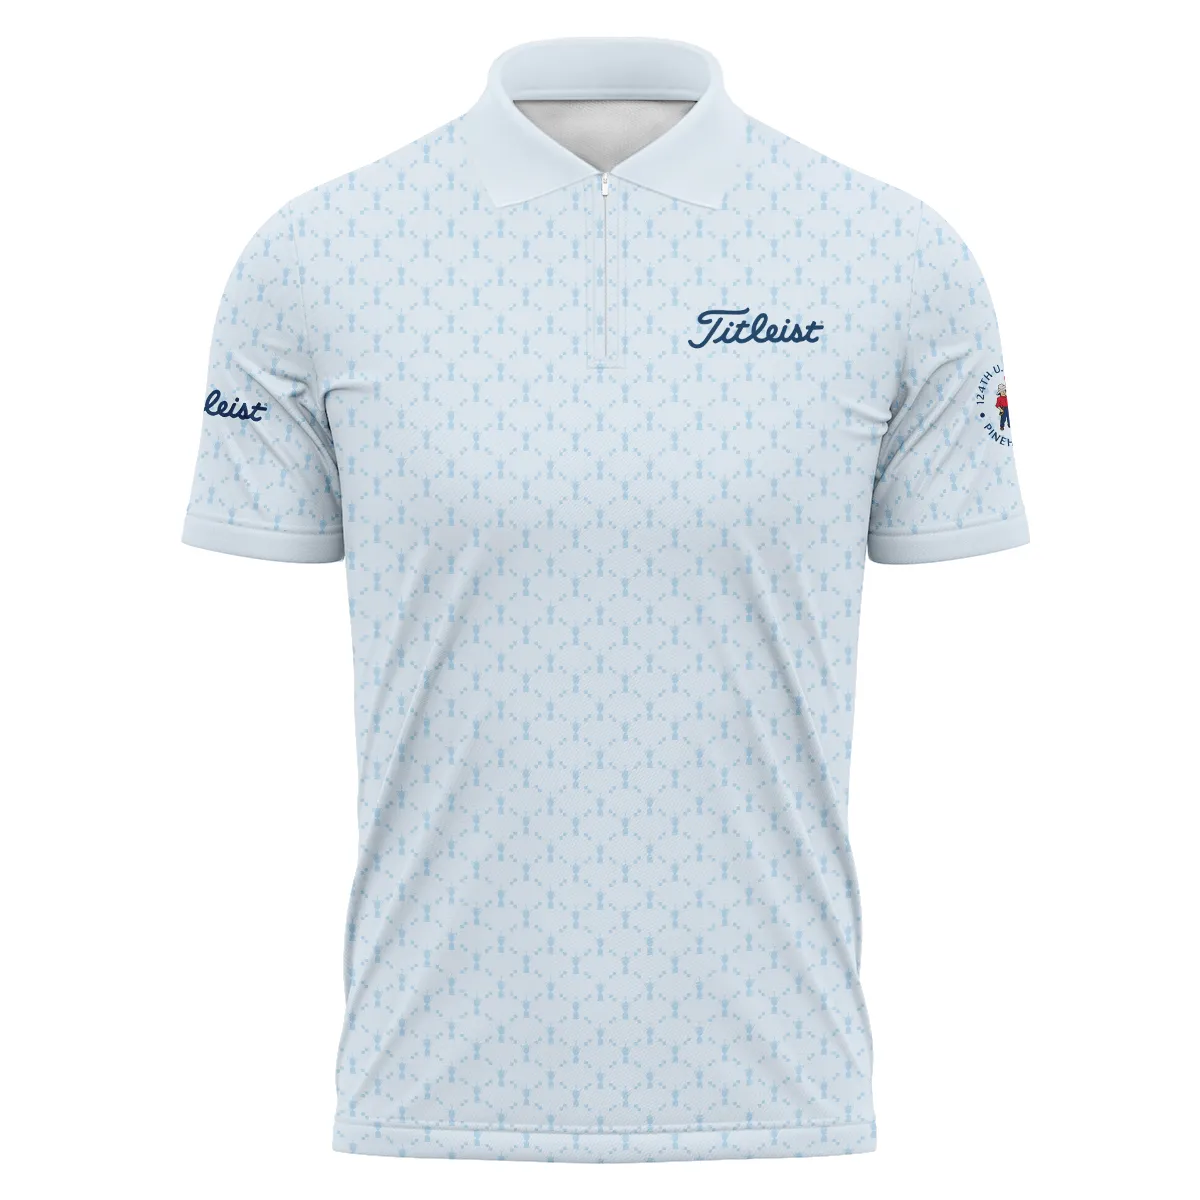 Golf Sport Pattern Blue Sport Uniform 124th U.S. Open Pinehurst Titleist Zipper Hoodie Shirt Style Classic